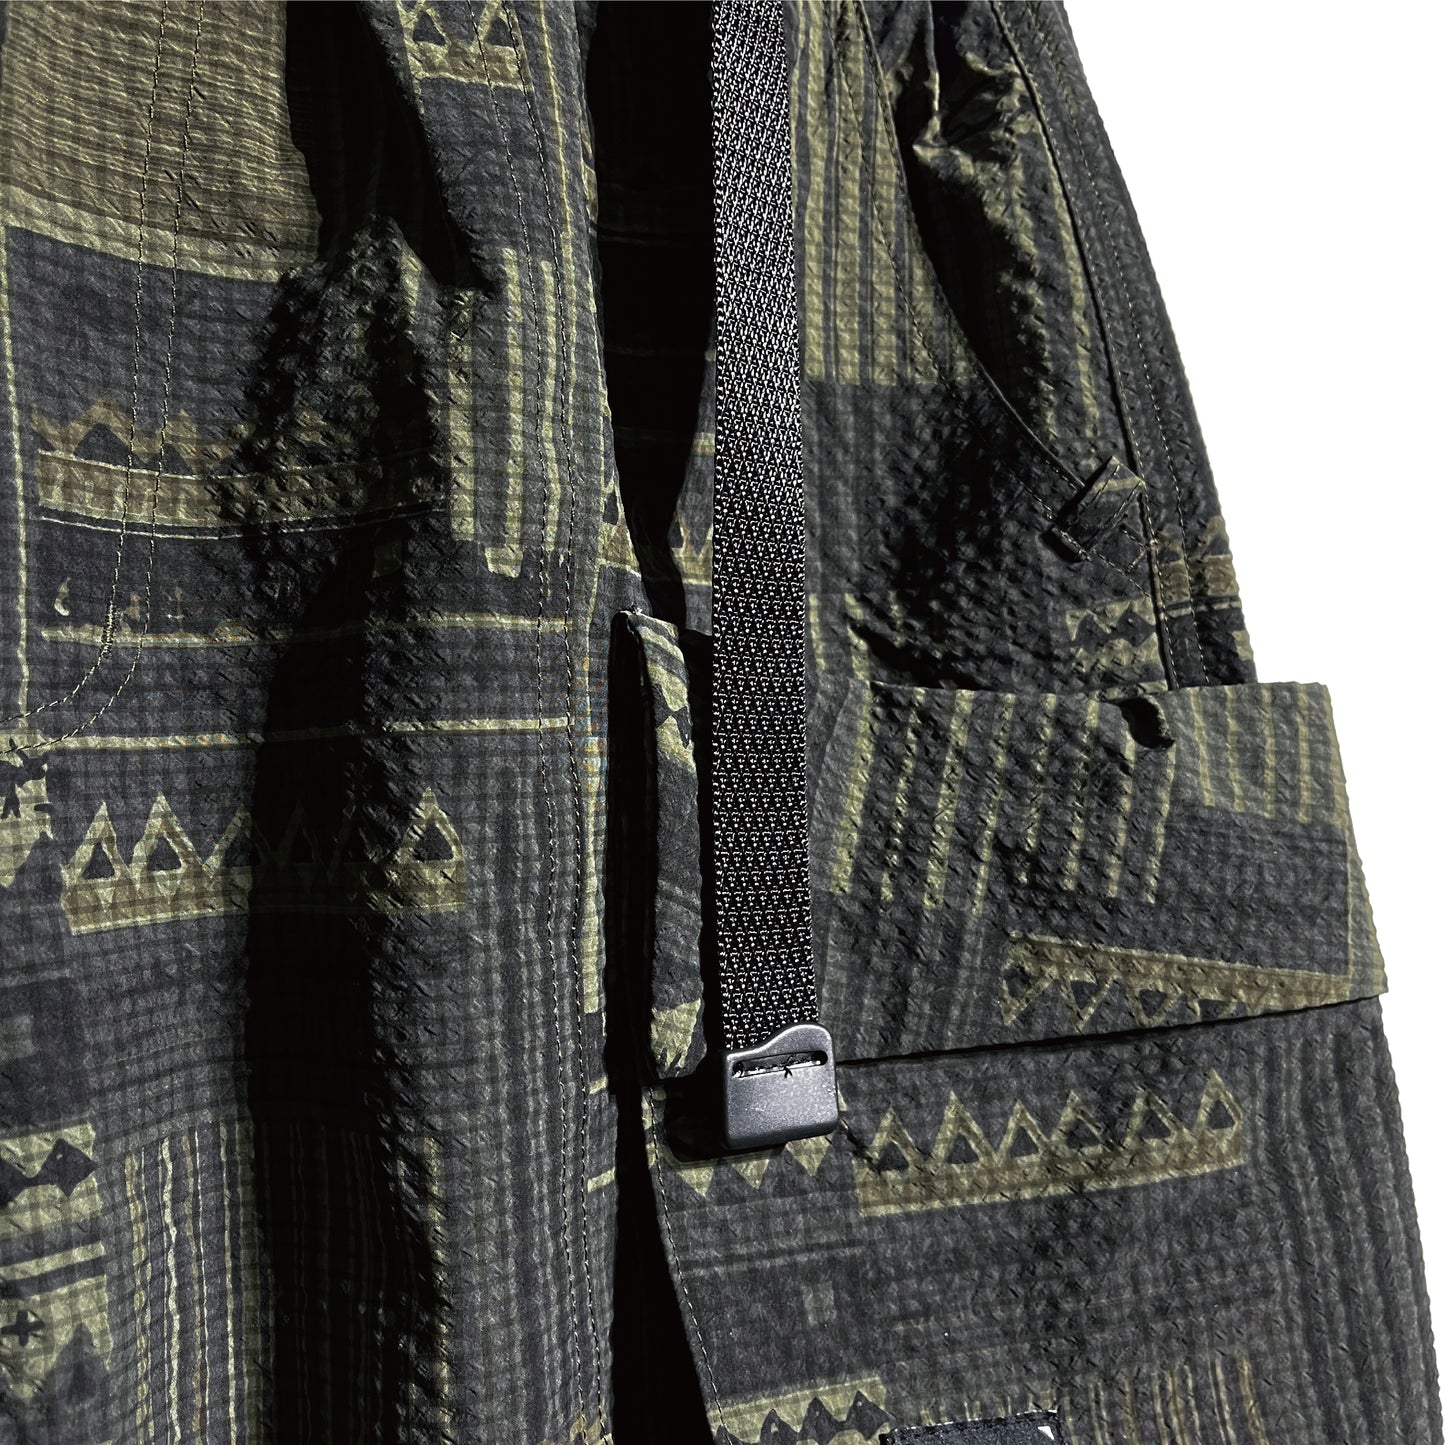 SP02V3 Pocket Shorts (BKX)